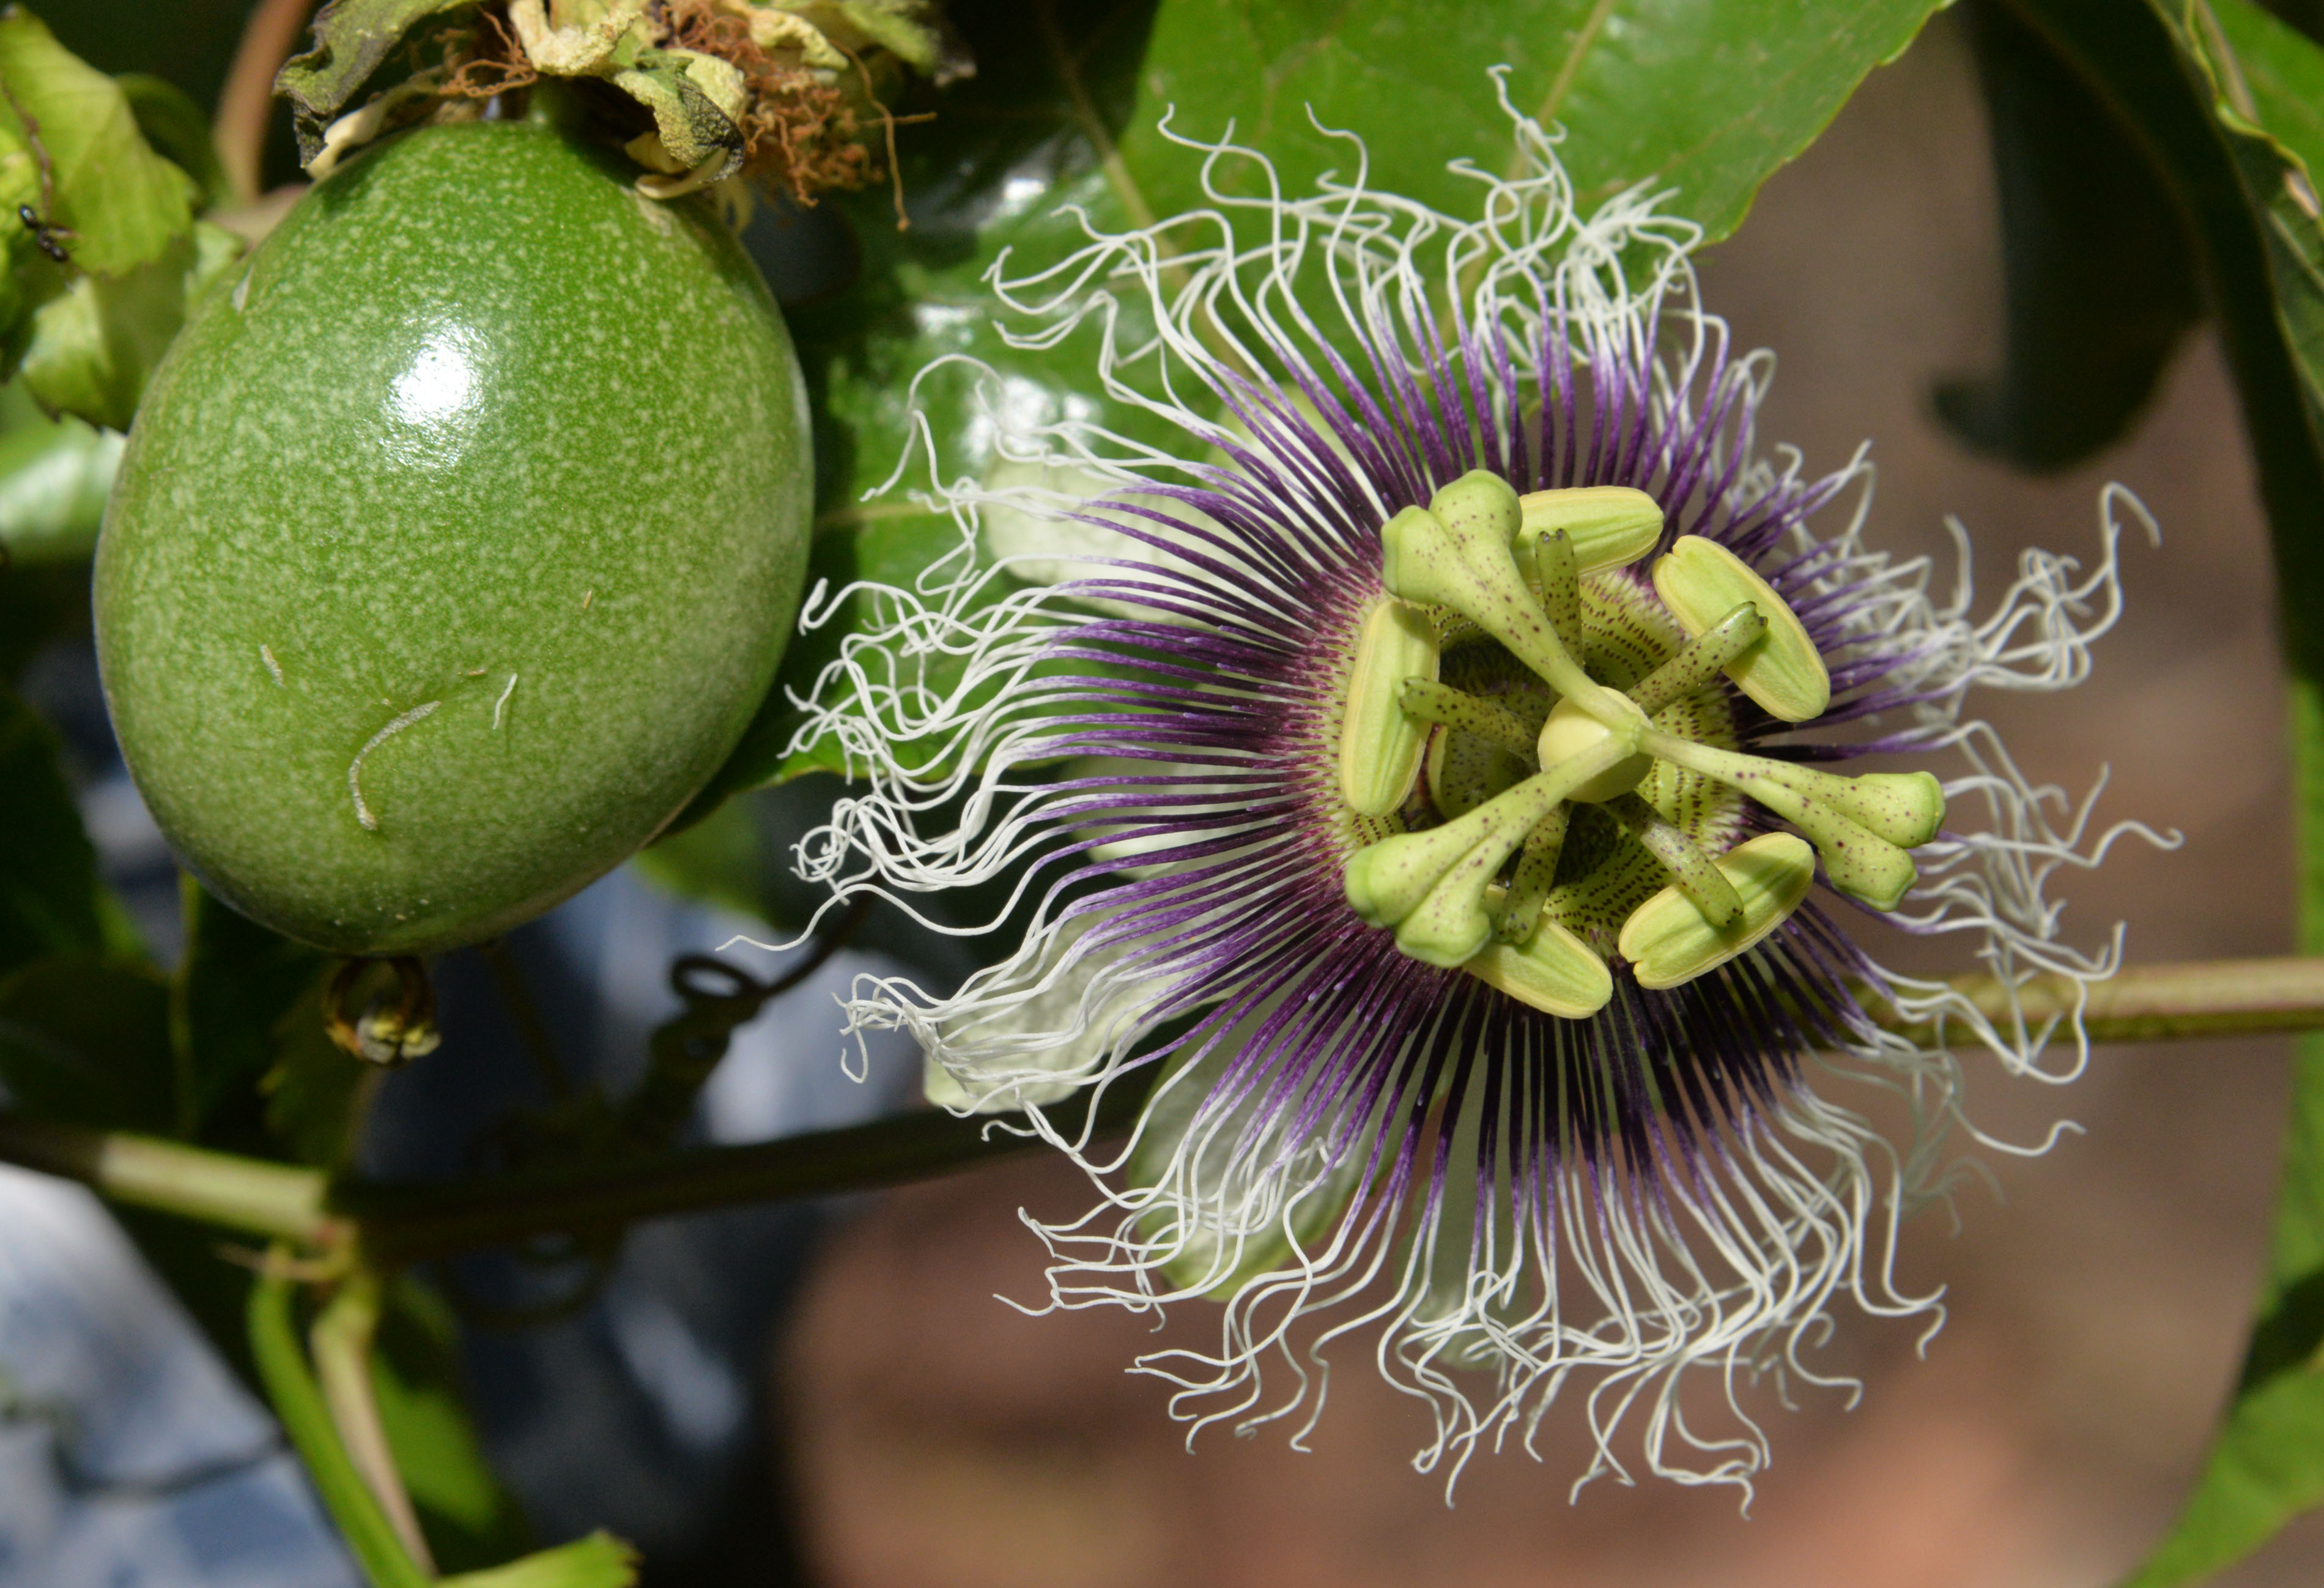 passiflora-unlulerin-gozde-meyvesi-oldu-7042-dhaphoto4.jpg